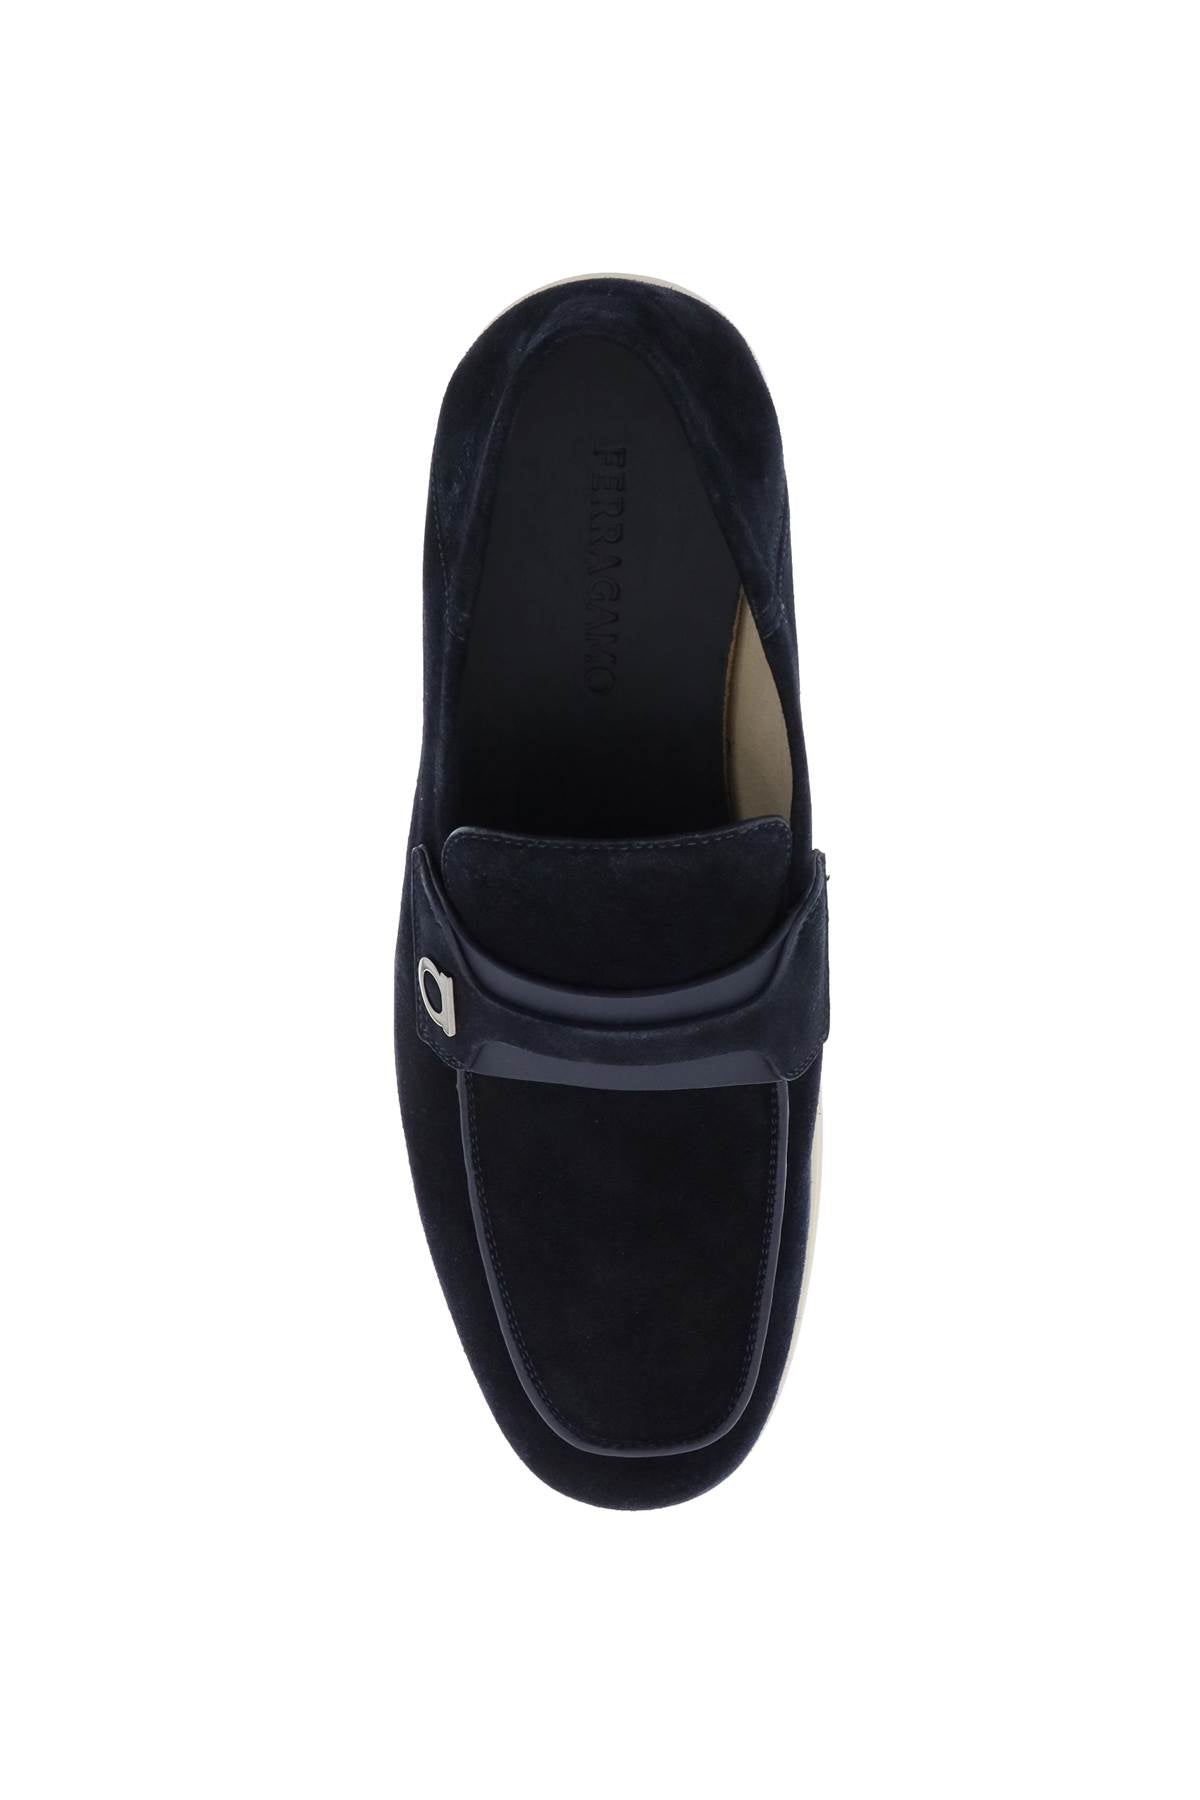 Giày Moccasins Blue Suede với Chi tiết Gancini Hook dành cho Nam